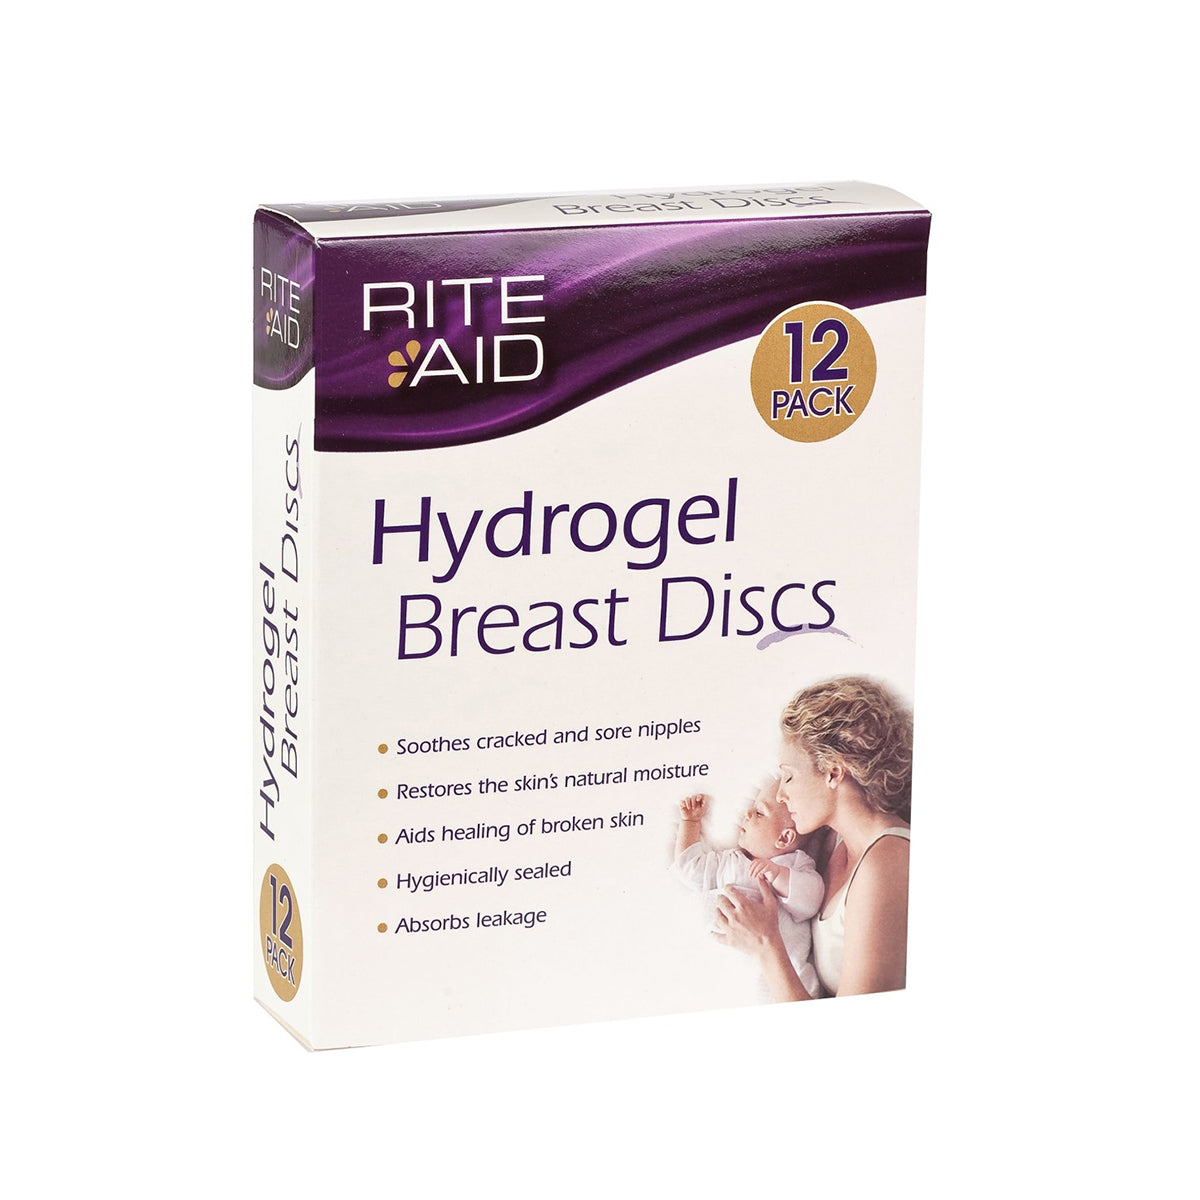 https://www.morethanmilk.co.nz/cdn/shop/products/Hydrogel-Breast-Discs.jpg?v=1655868997